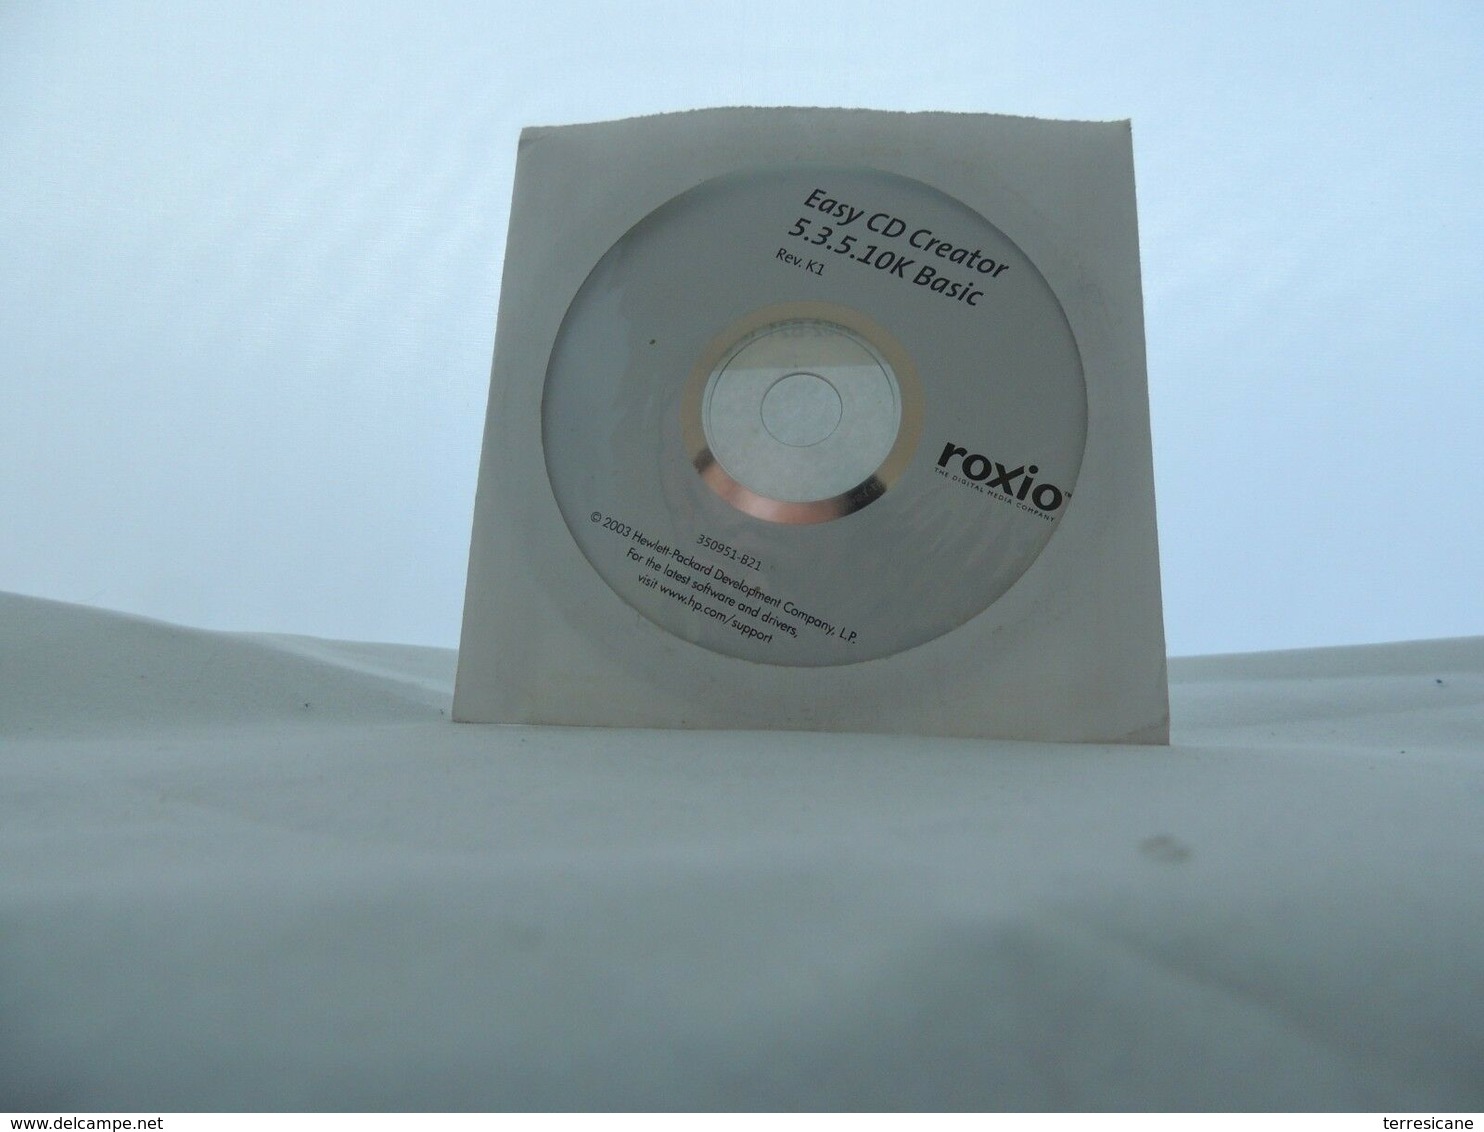 EASY CD CREATOR 5.3.5.10K BASIC ROXIO G4 - CD